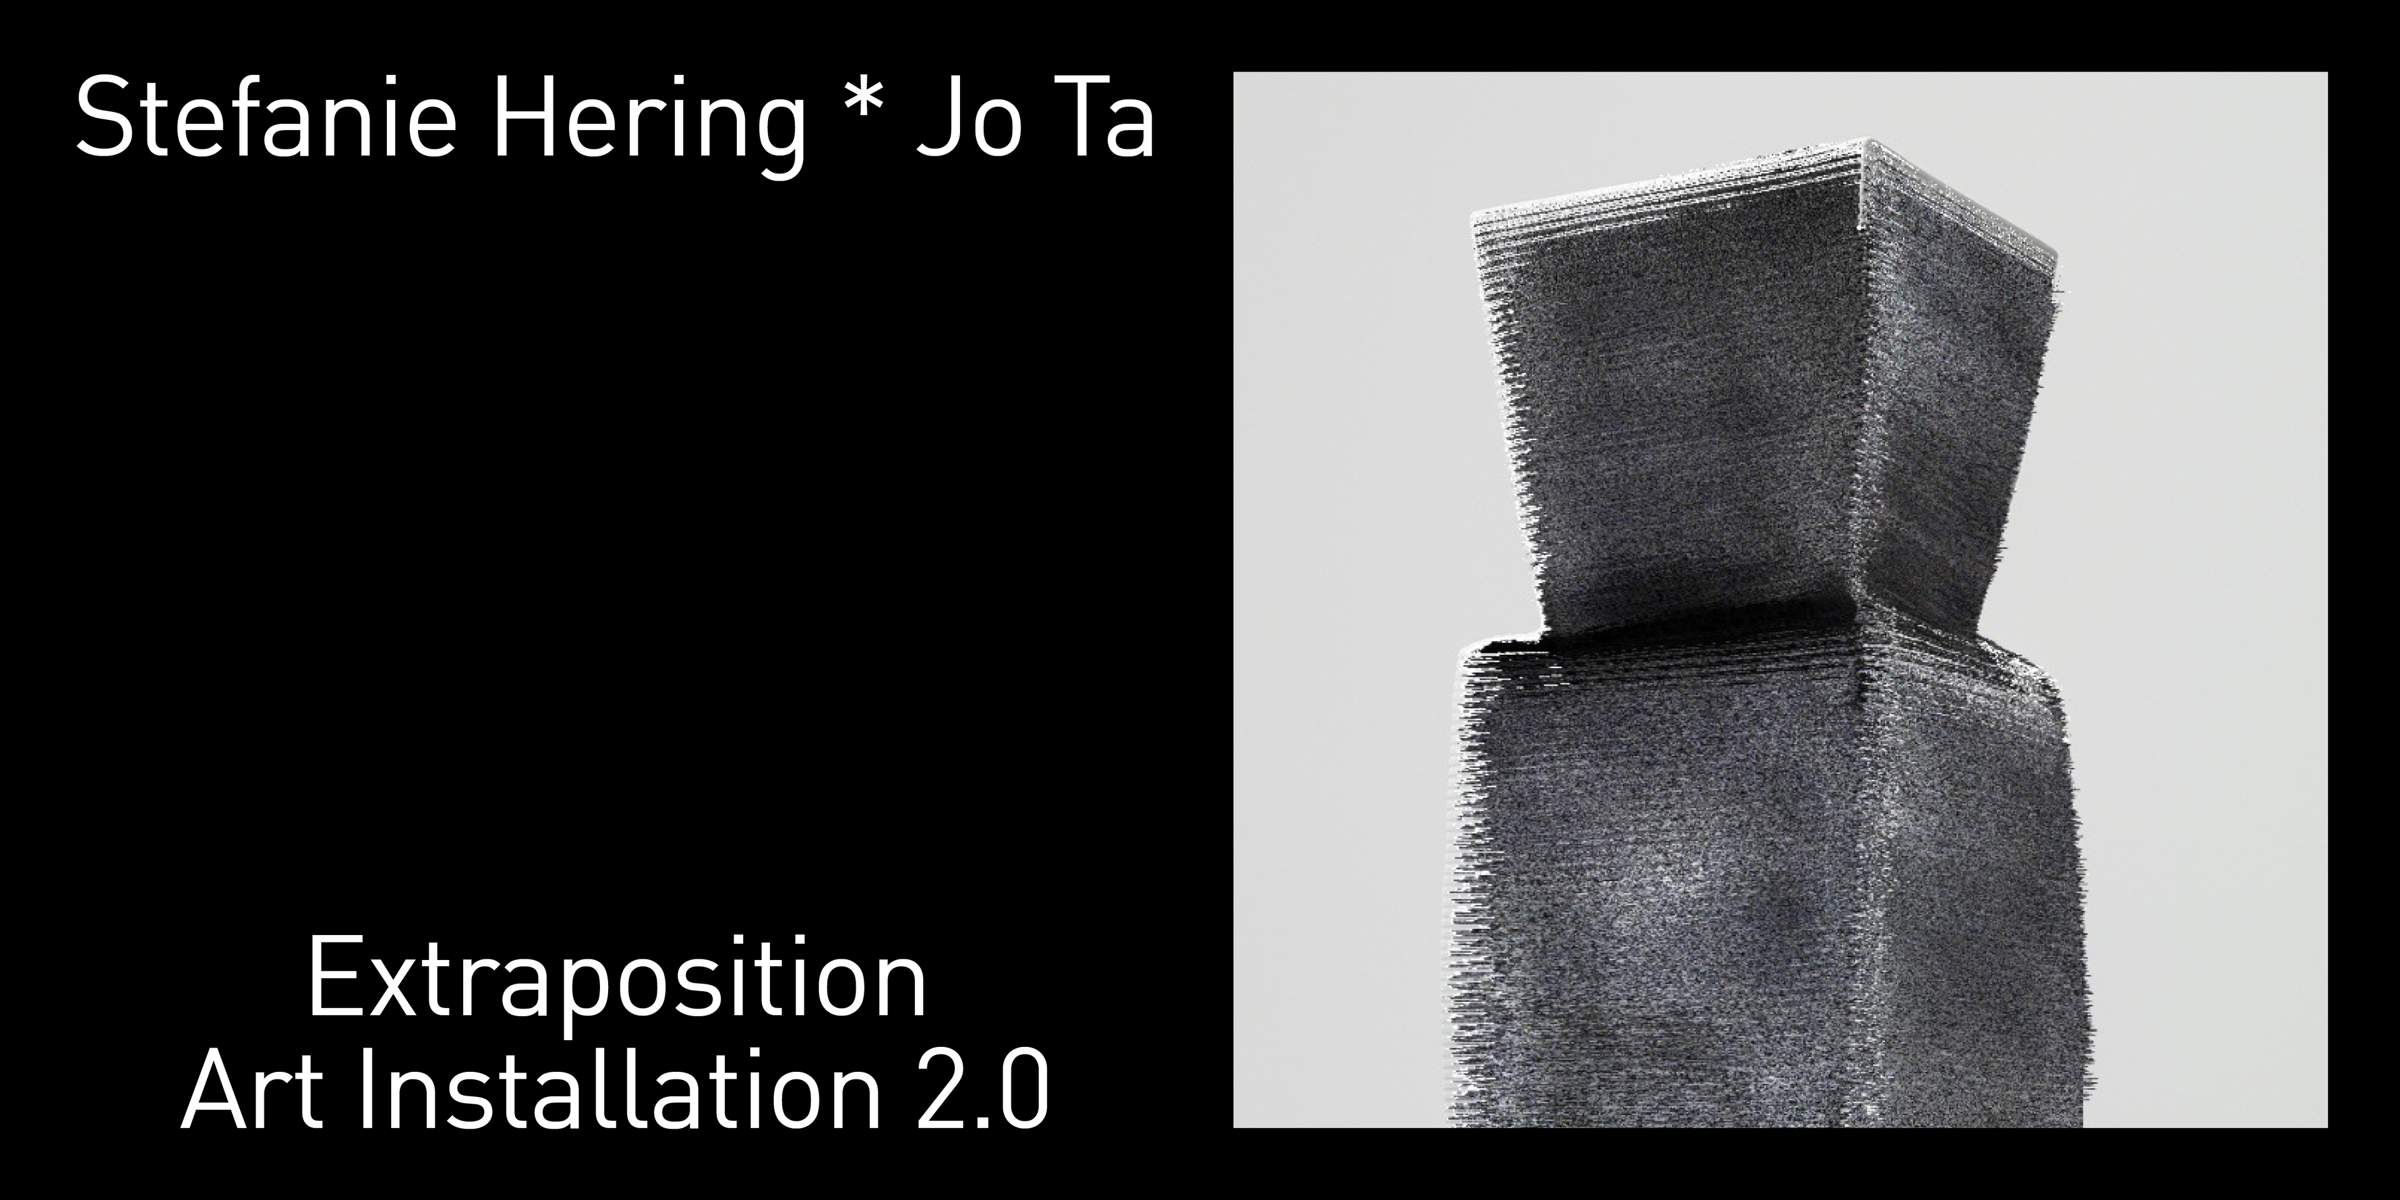 HB_Stories_JoTa_Extraposition_Art_Installation_2.0